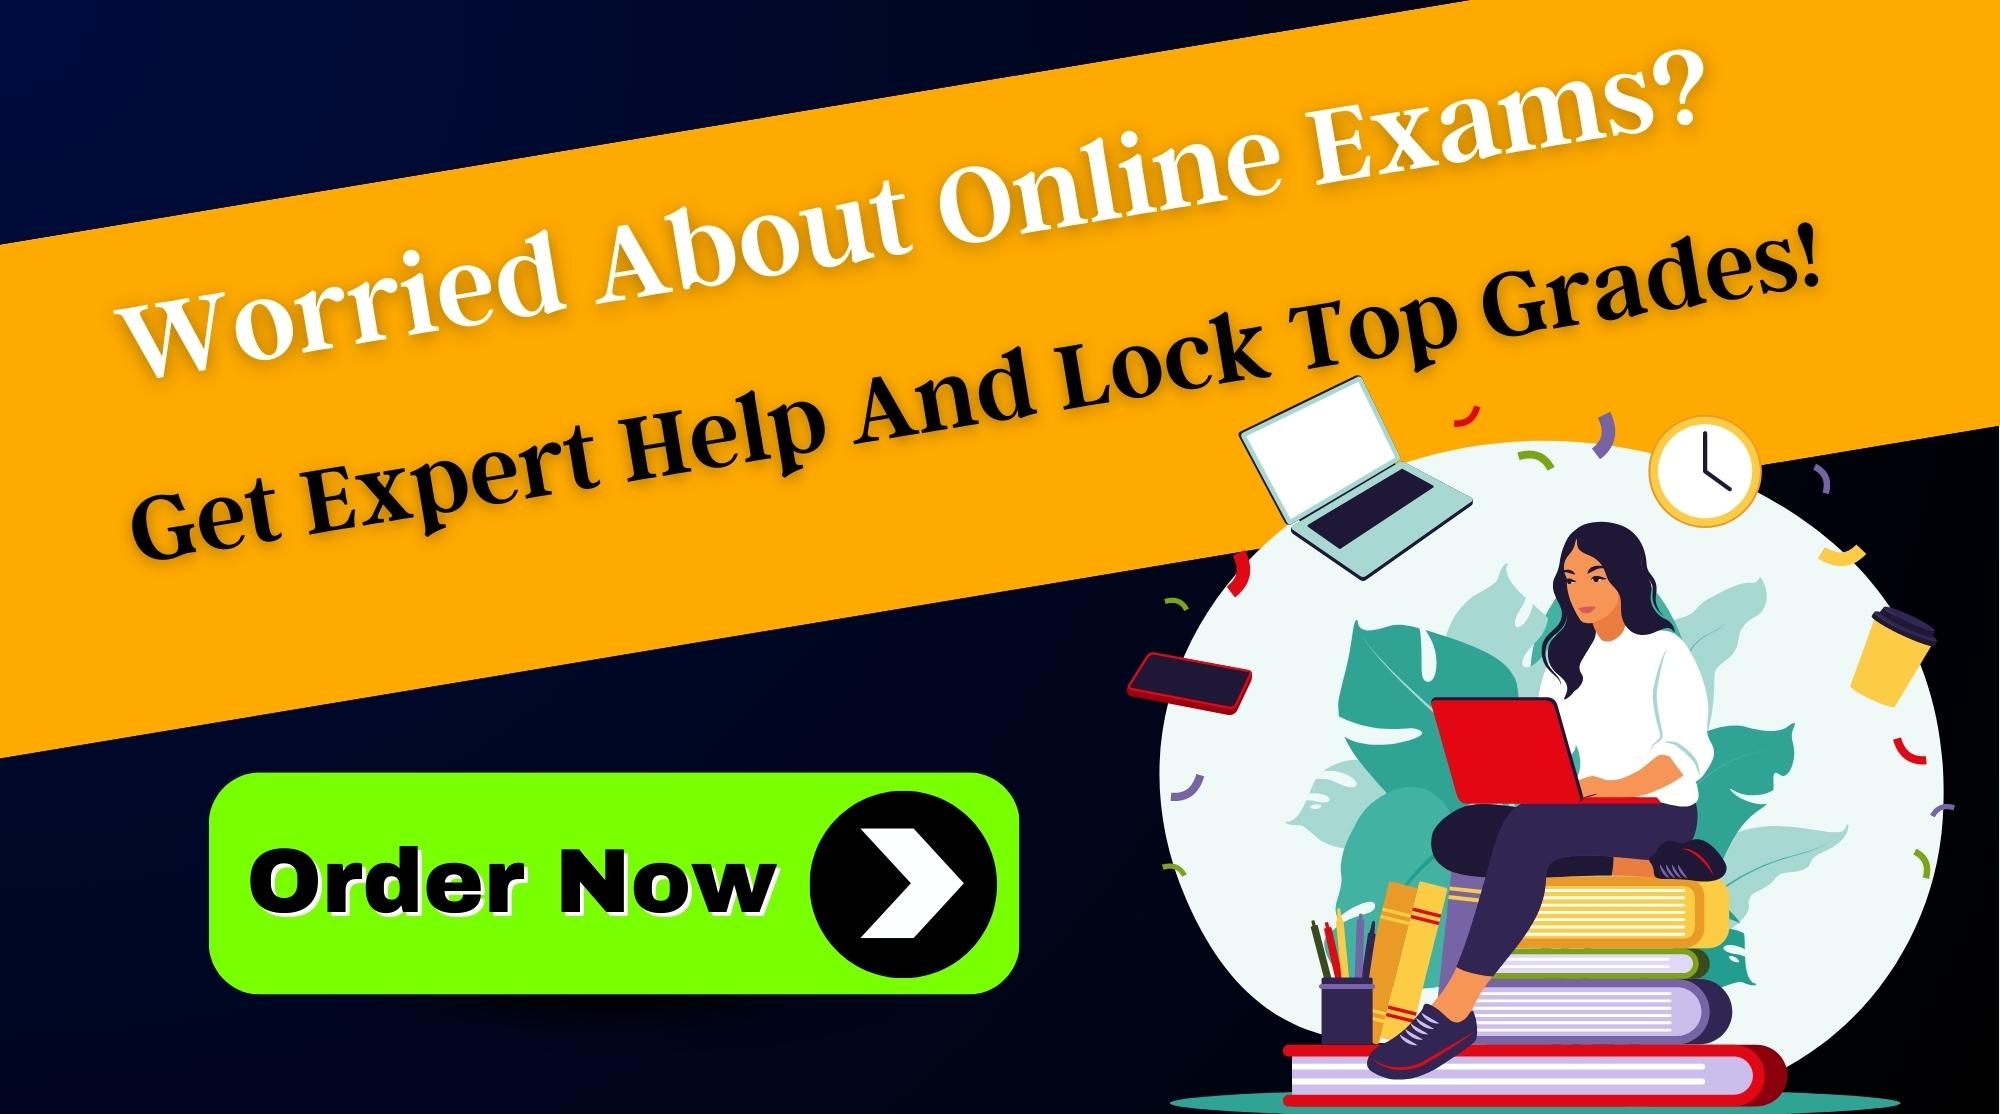 Online Exam Help - Lock Top Grades